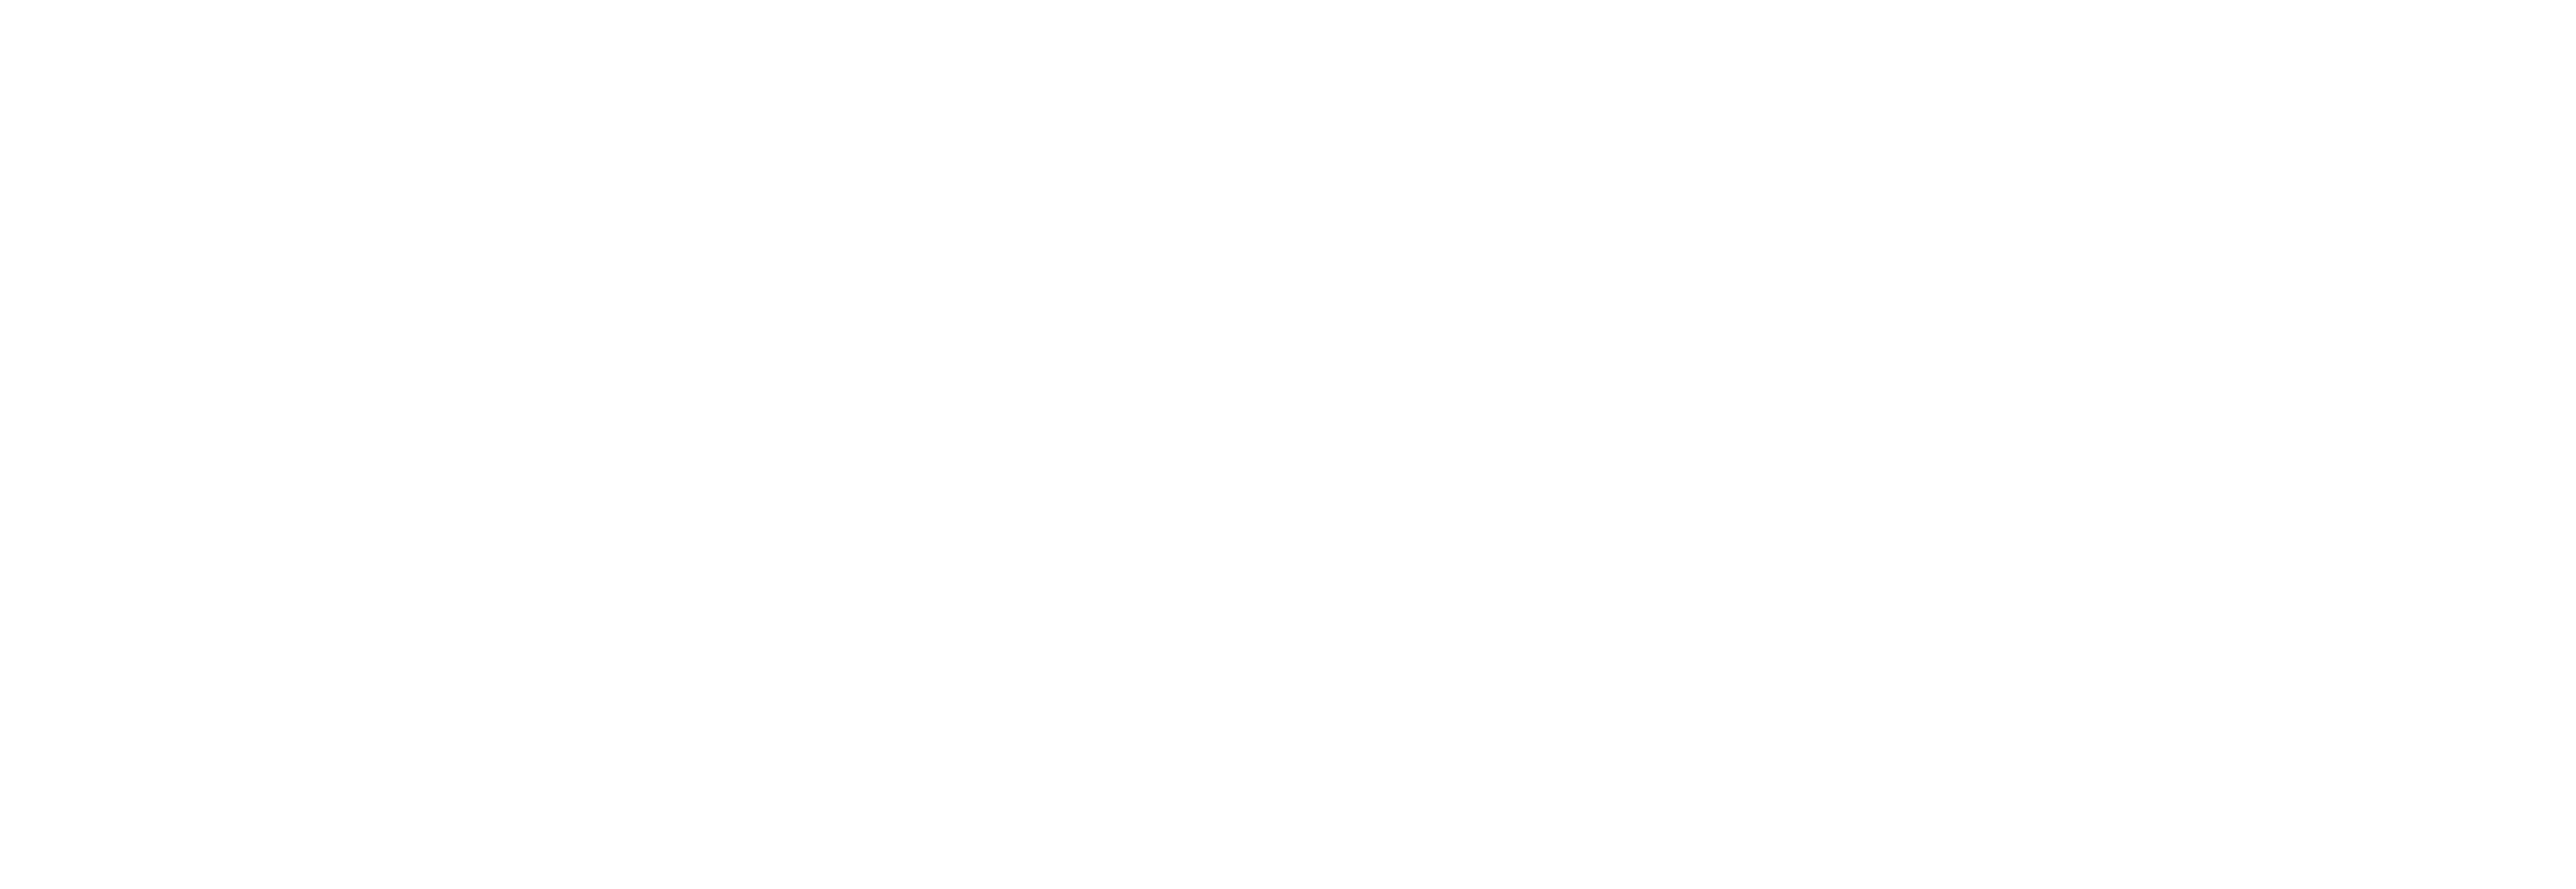 modern_krav_maga_logo_white